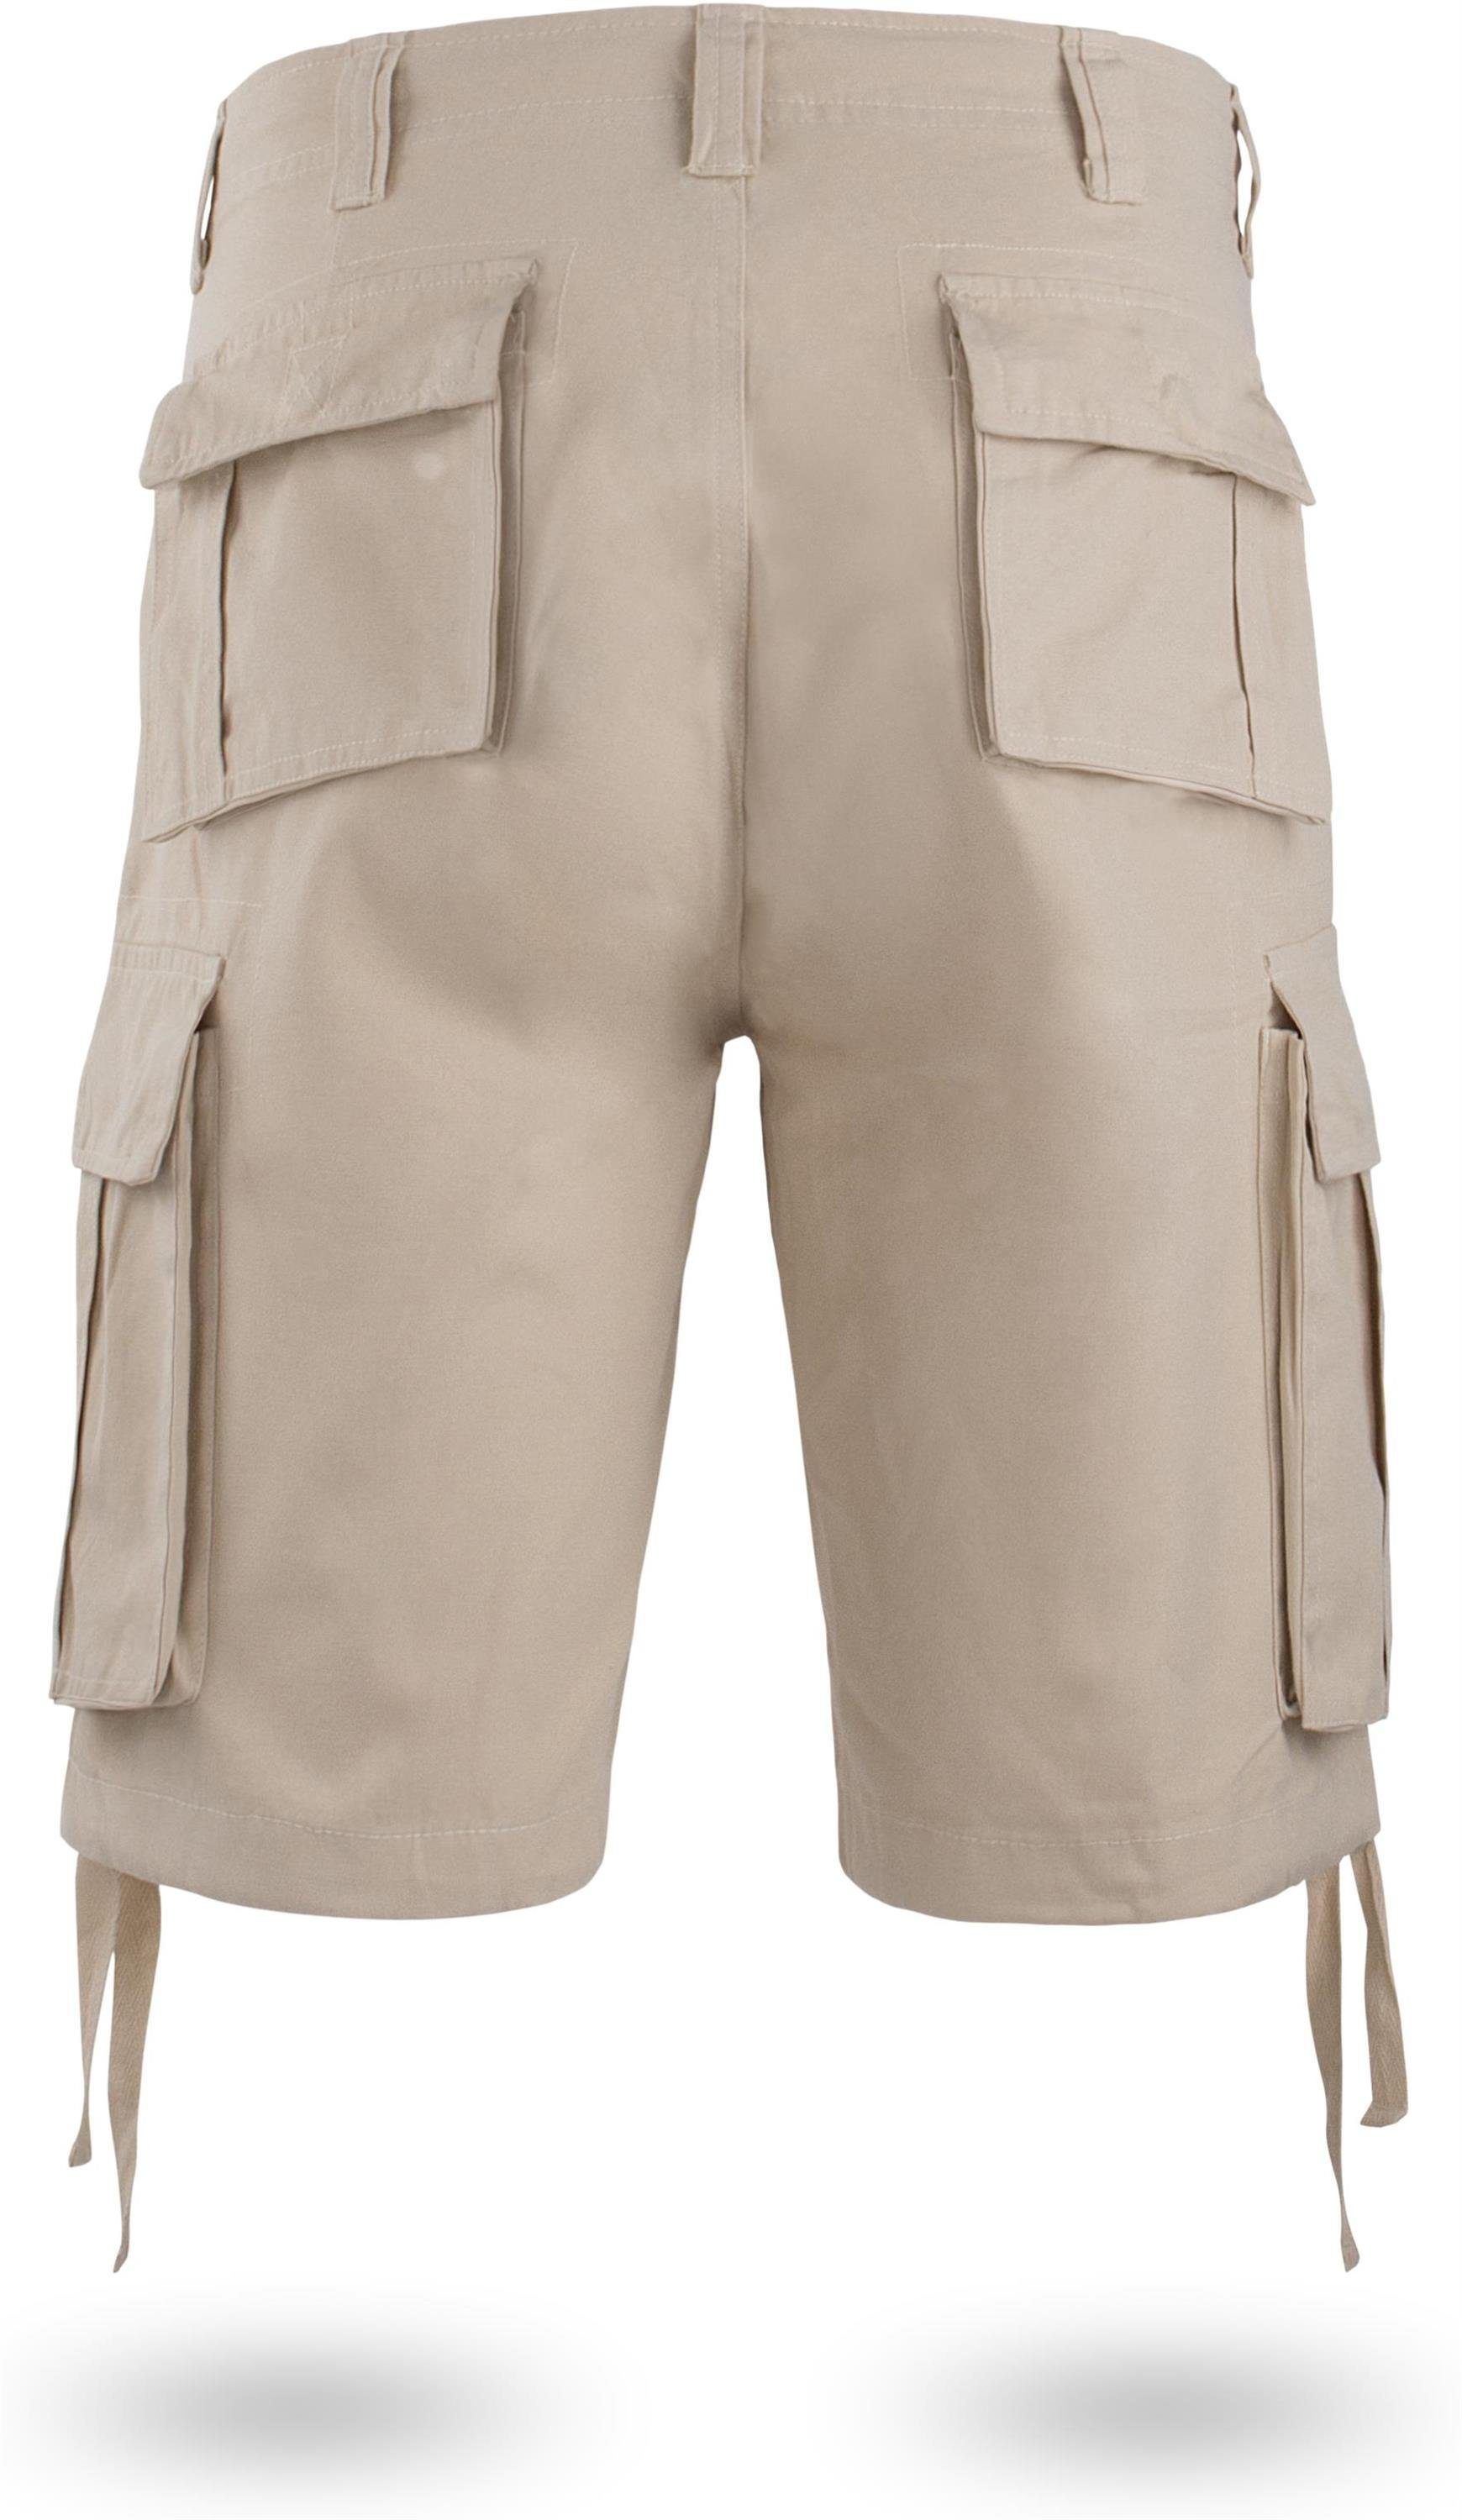 Shorts aus Kalahari Cargotaschen Vintage kurze Khaki Bio-Baumwolle Bermudas Shorts mit Sommershorts Herren 100% normani